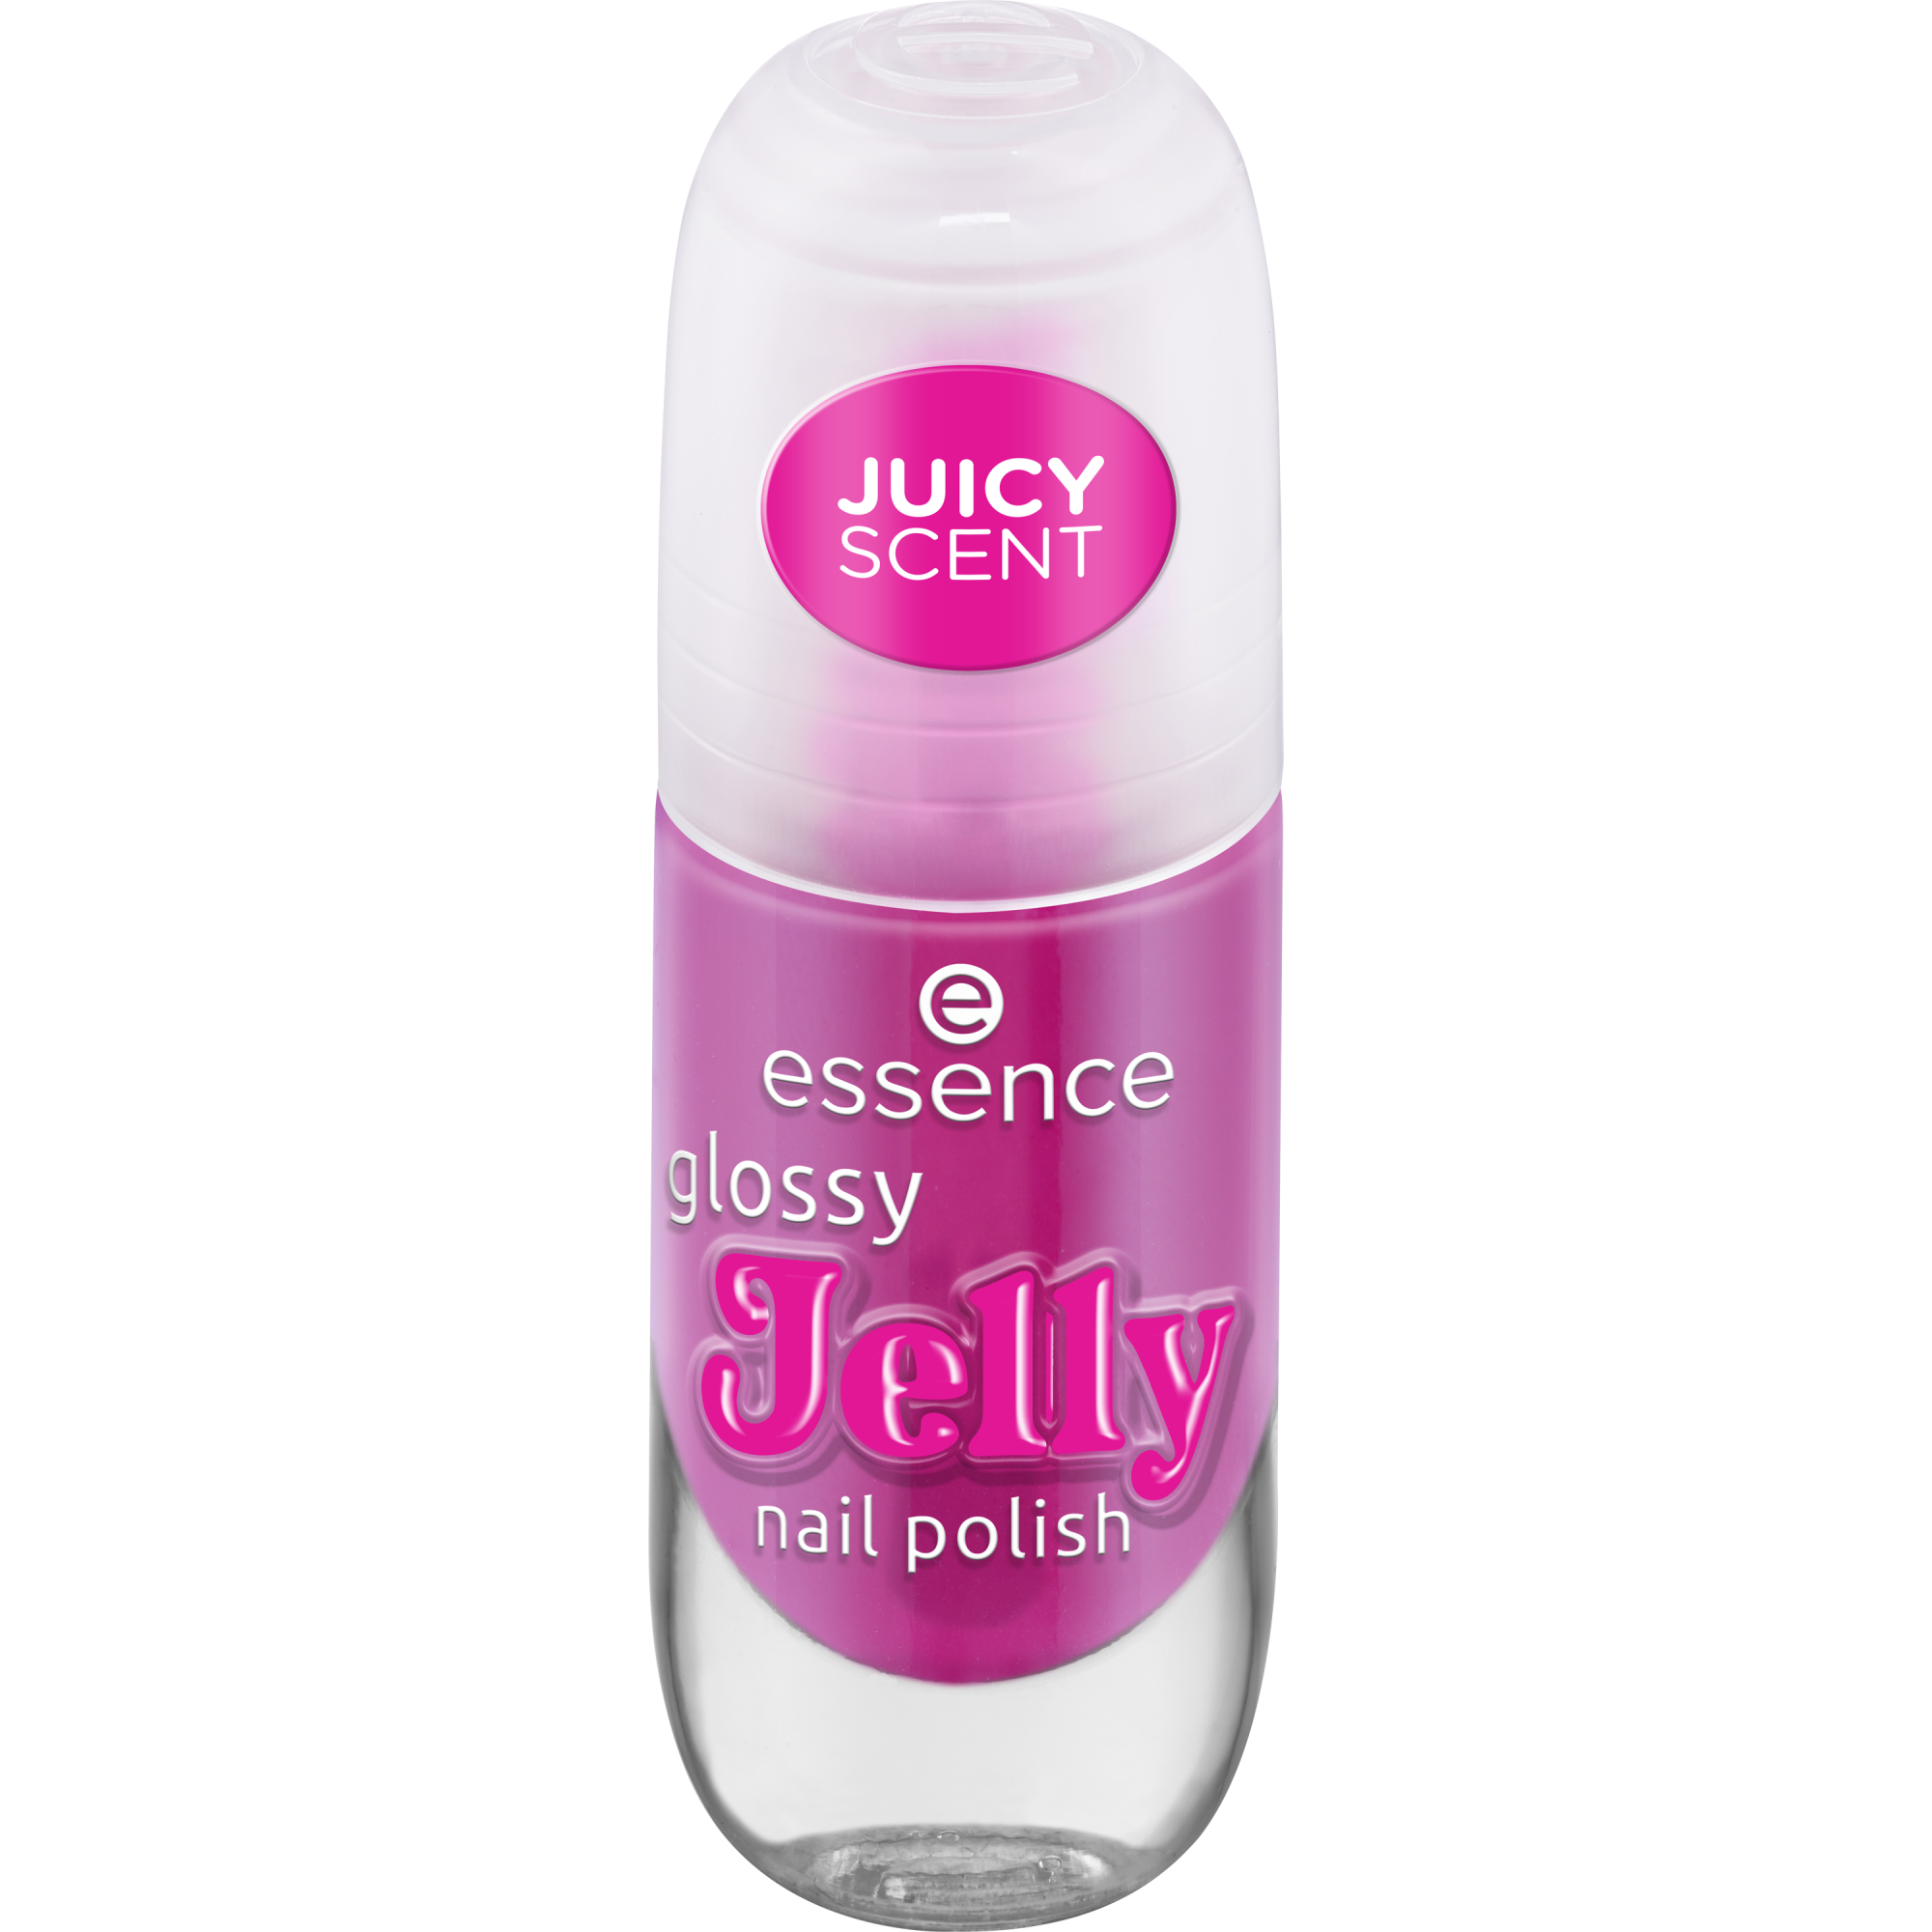 glossy Jelly nail polish